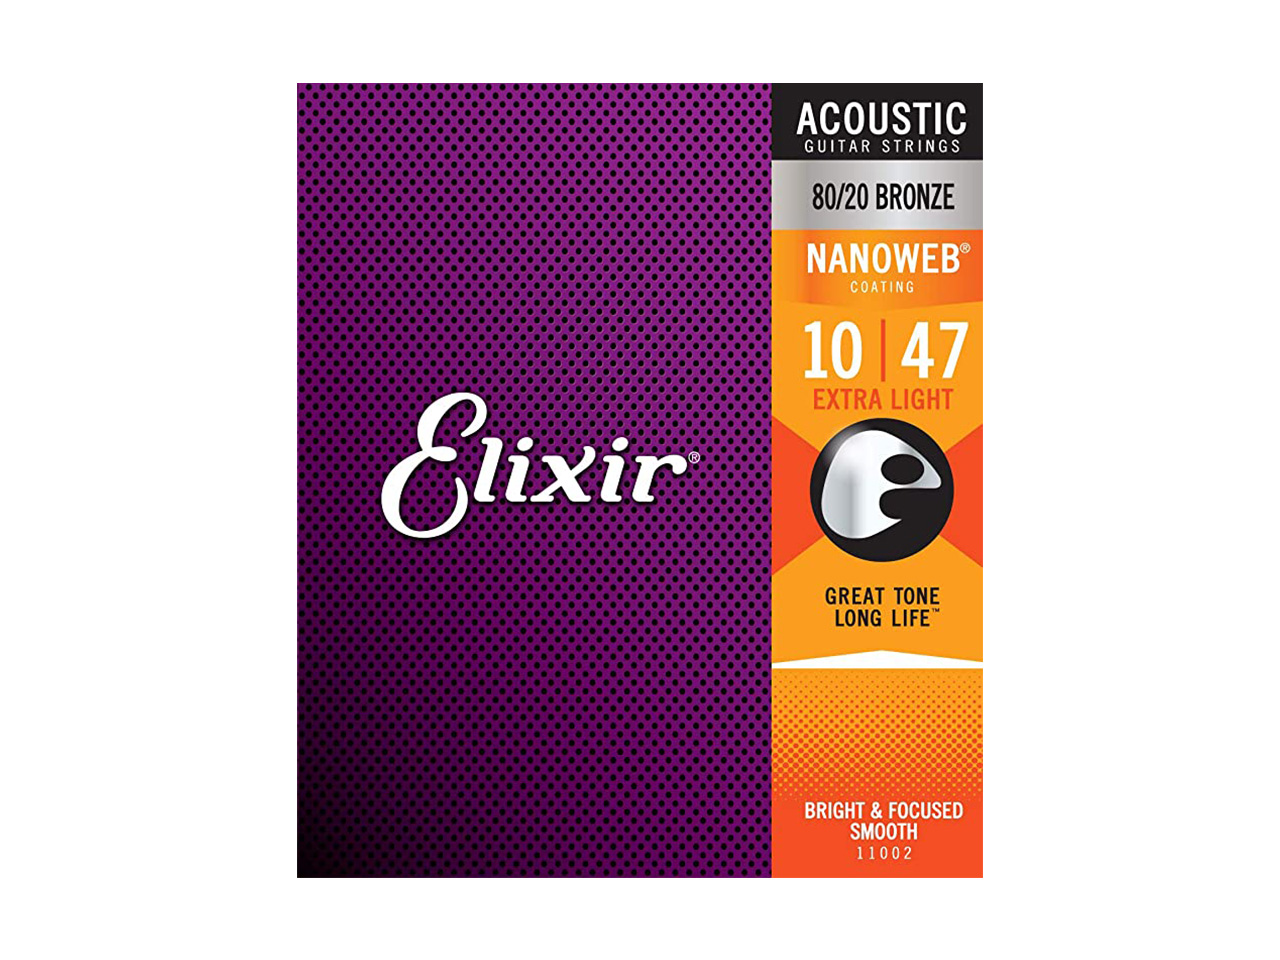 Elixir(エリクサー) NANOWEB Acoustic 80/20 Bronze EXTRA LIGHT【11002】 / 010-047 (アコースティックギター弦)